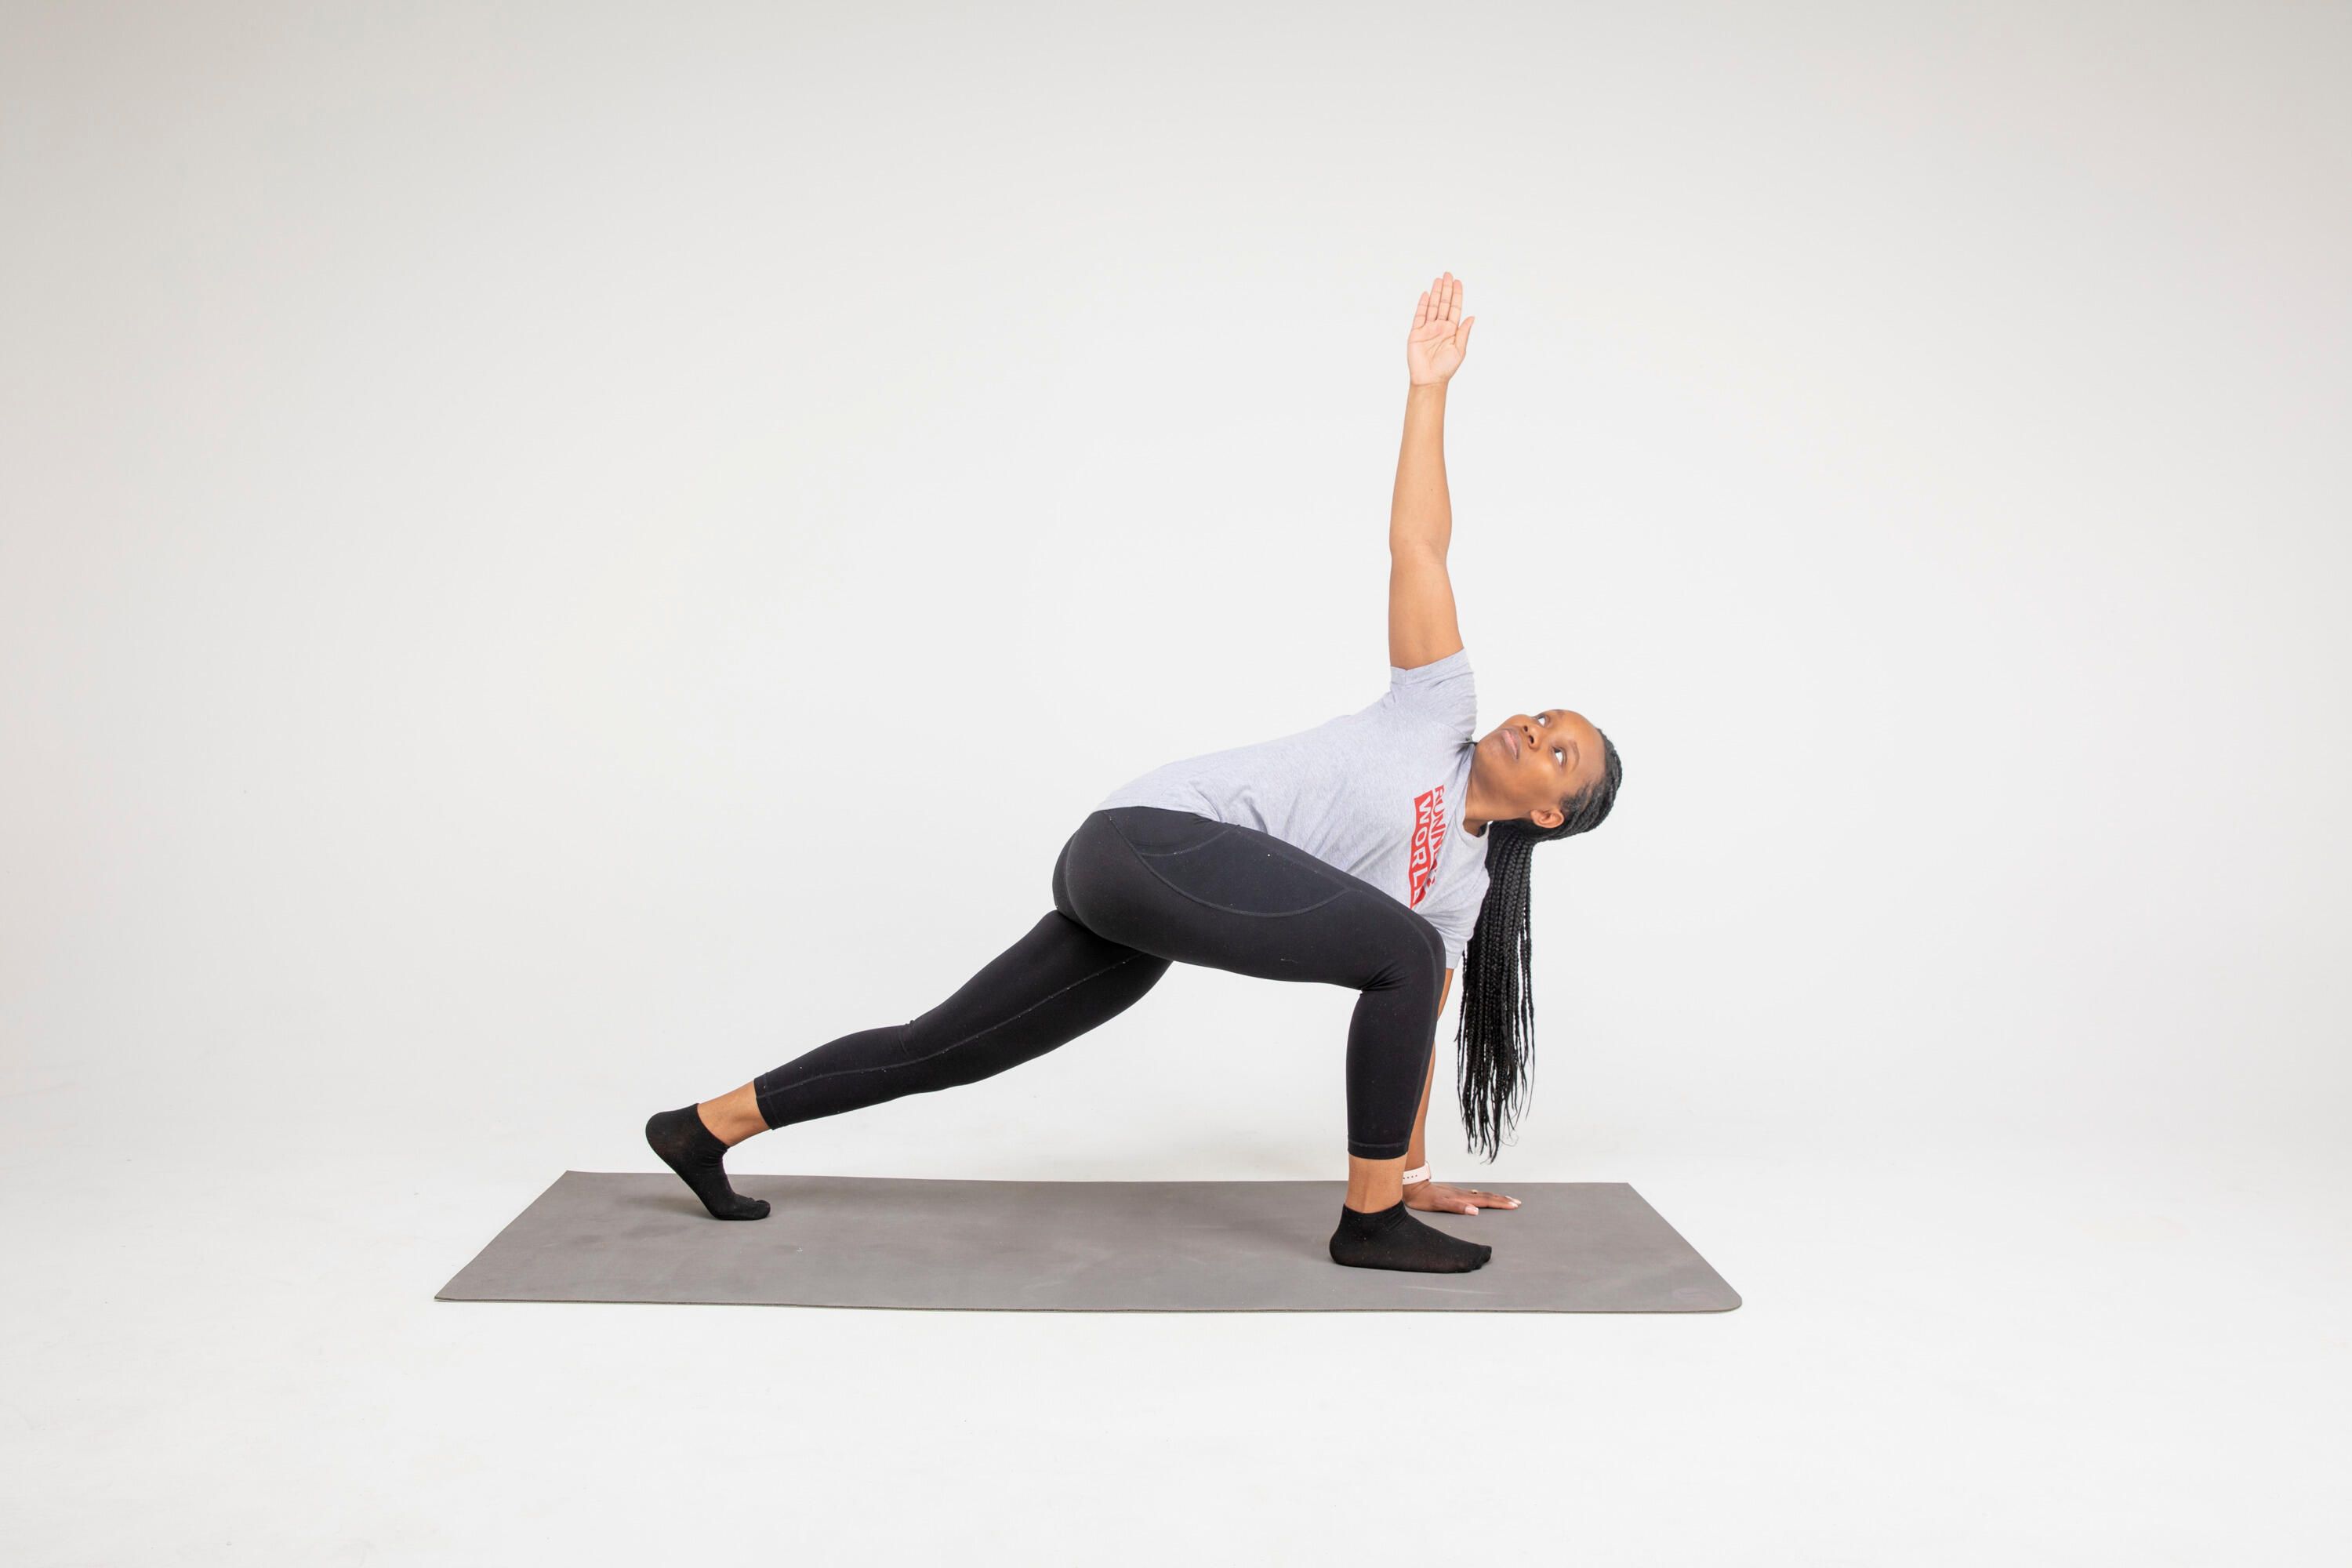 Can You Do Yoga If You're Not Flexible? — Jacqui Noël Yoga